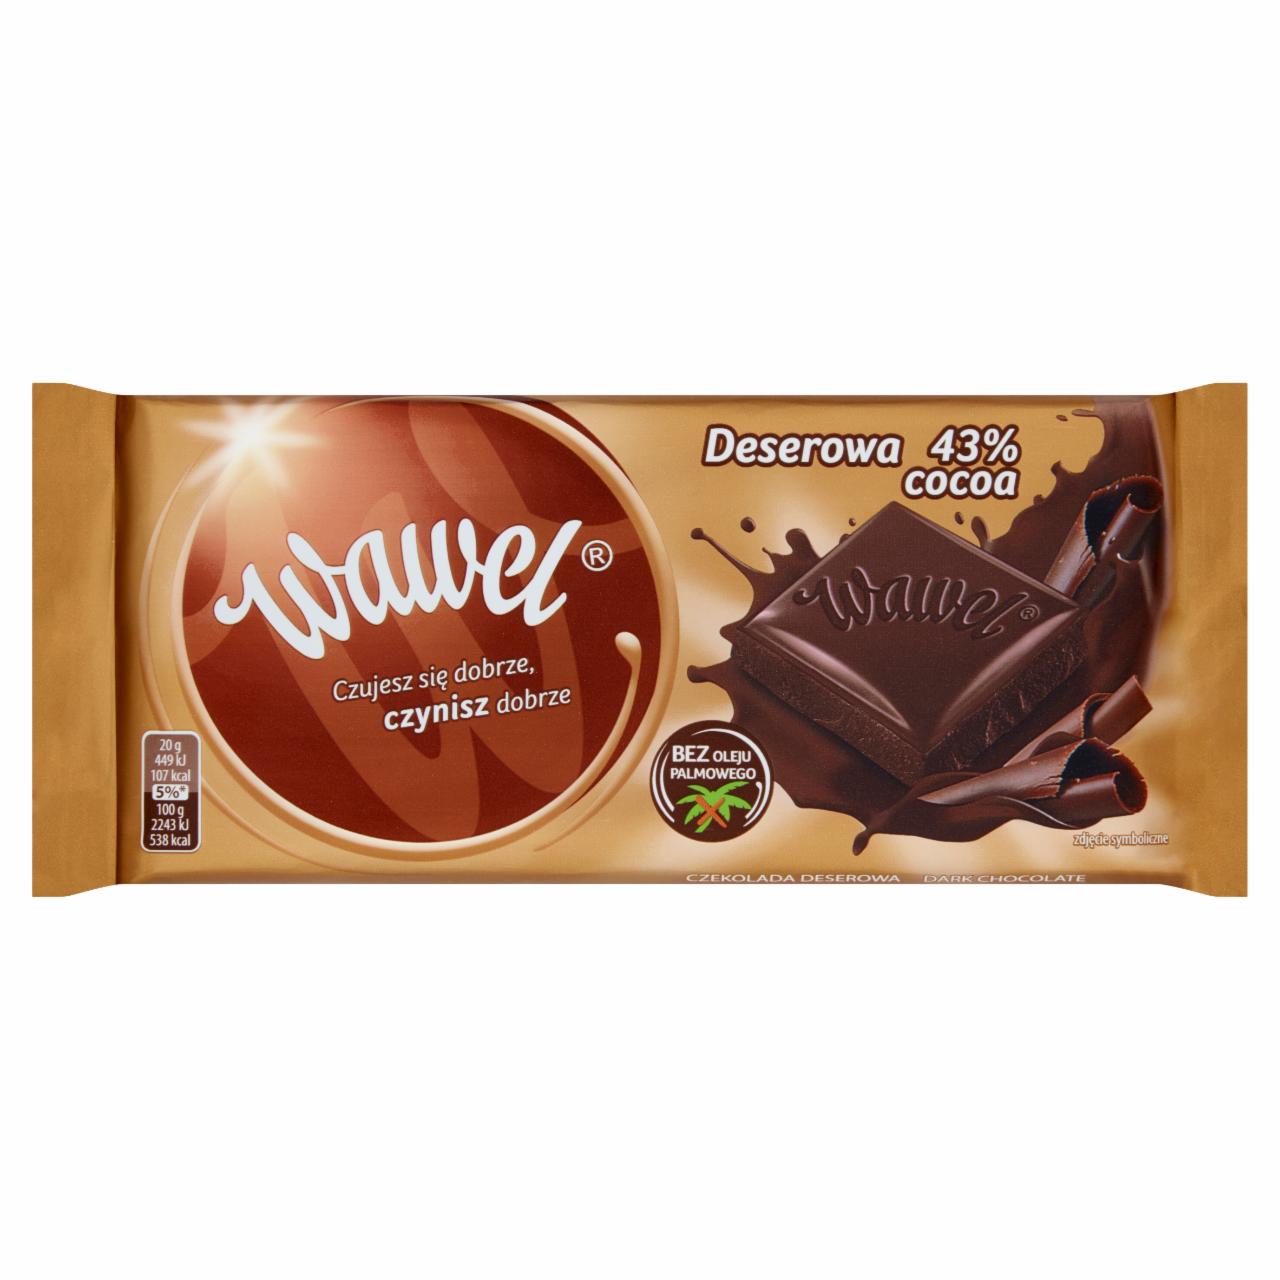 Zdjęcia - Czekolada deserowa 43% Cocoa 100 g Wawel